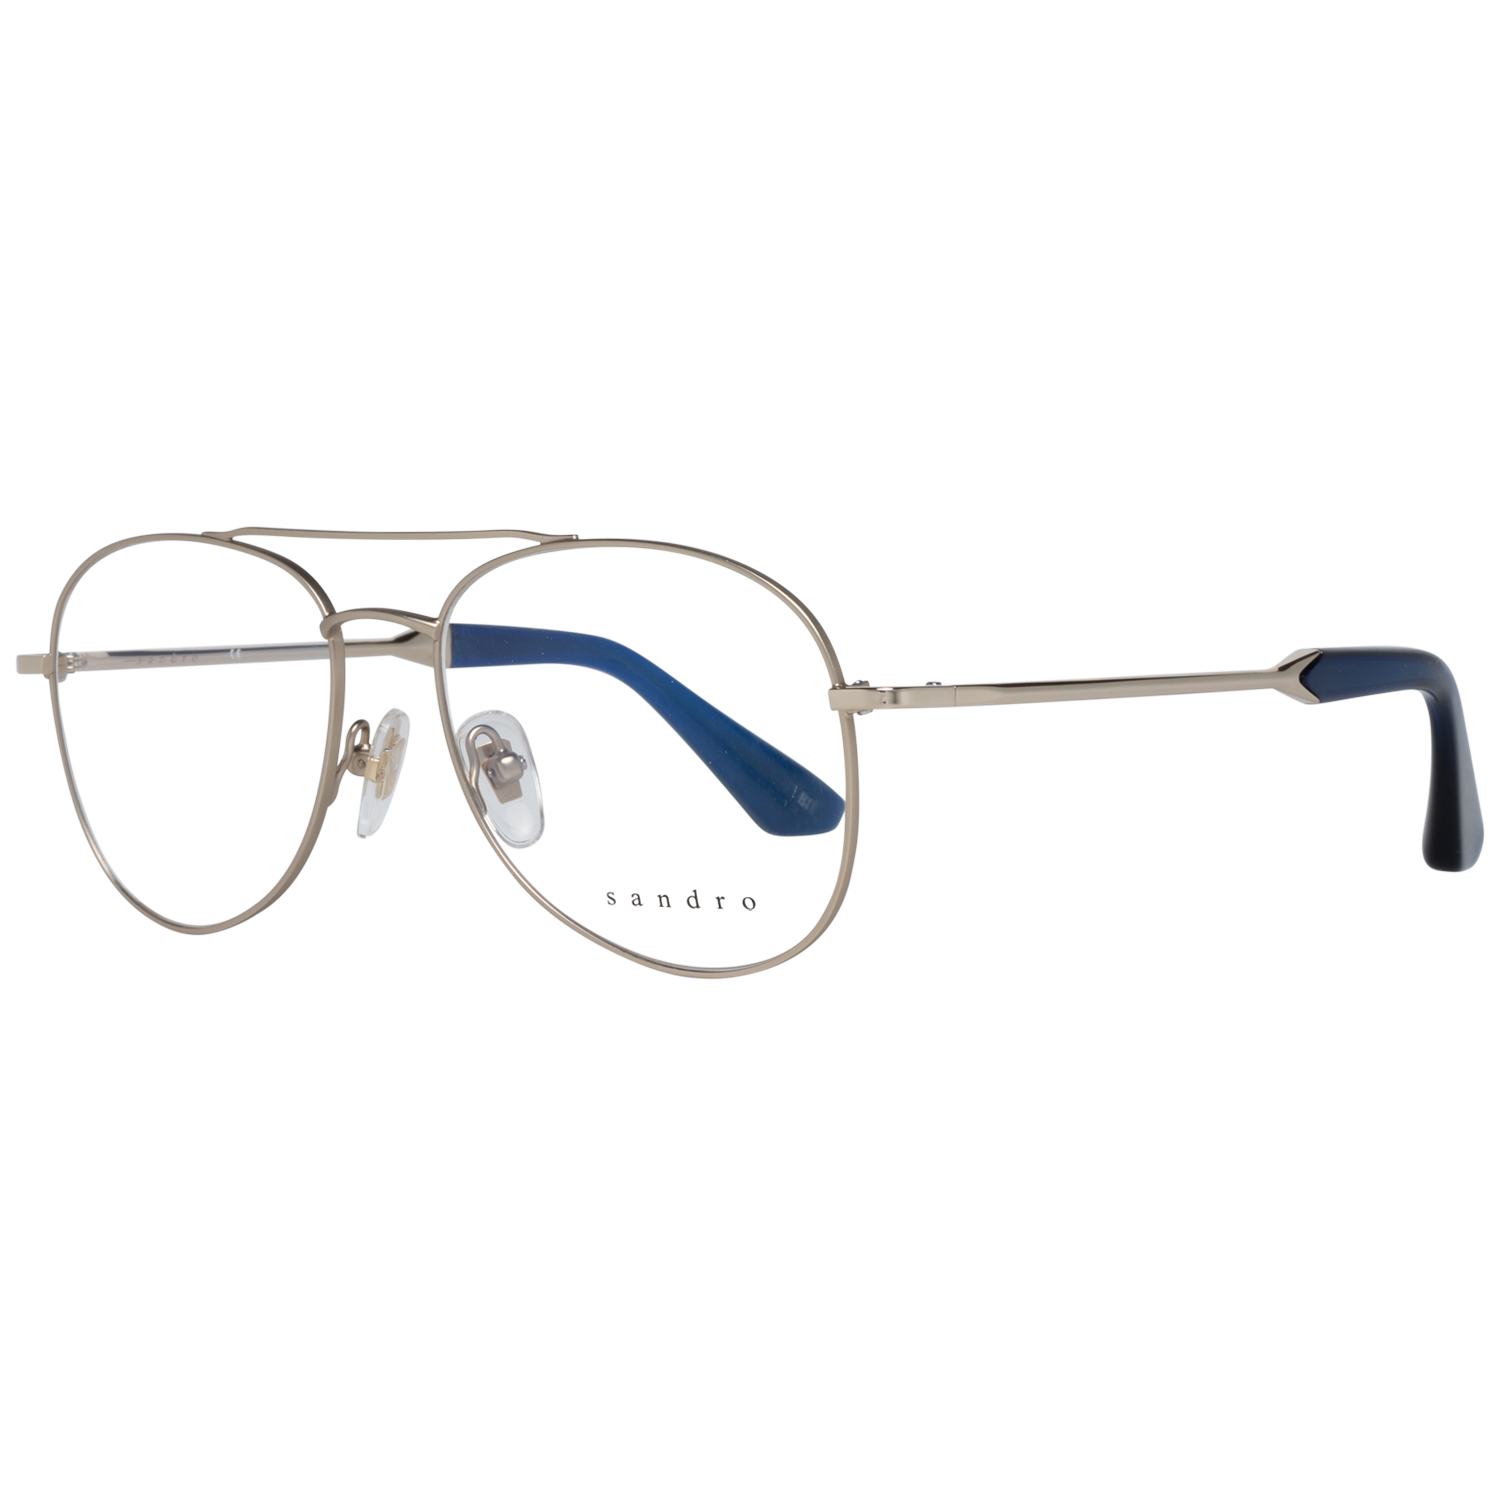 Sandro Frames Sandro Optical Frame SD4003 903 51 Eyeglasses Eyewear UK USA Australia 